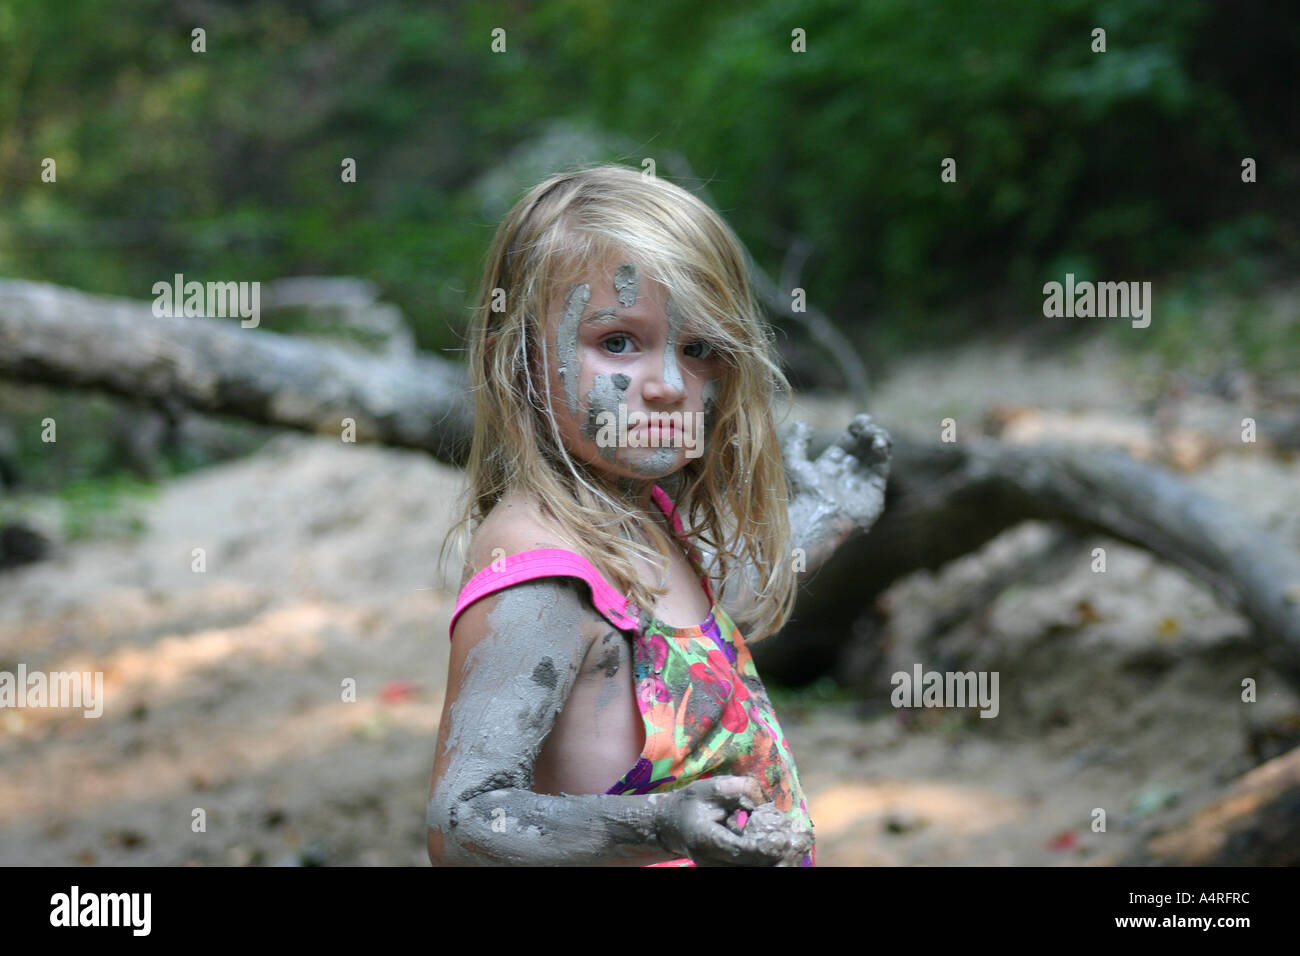 Junge Mädchen Spielen Im Schlamm Stockfotografie Alamy 